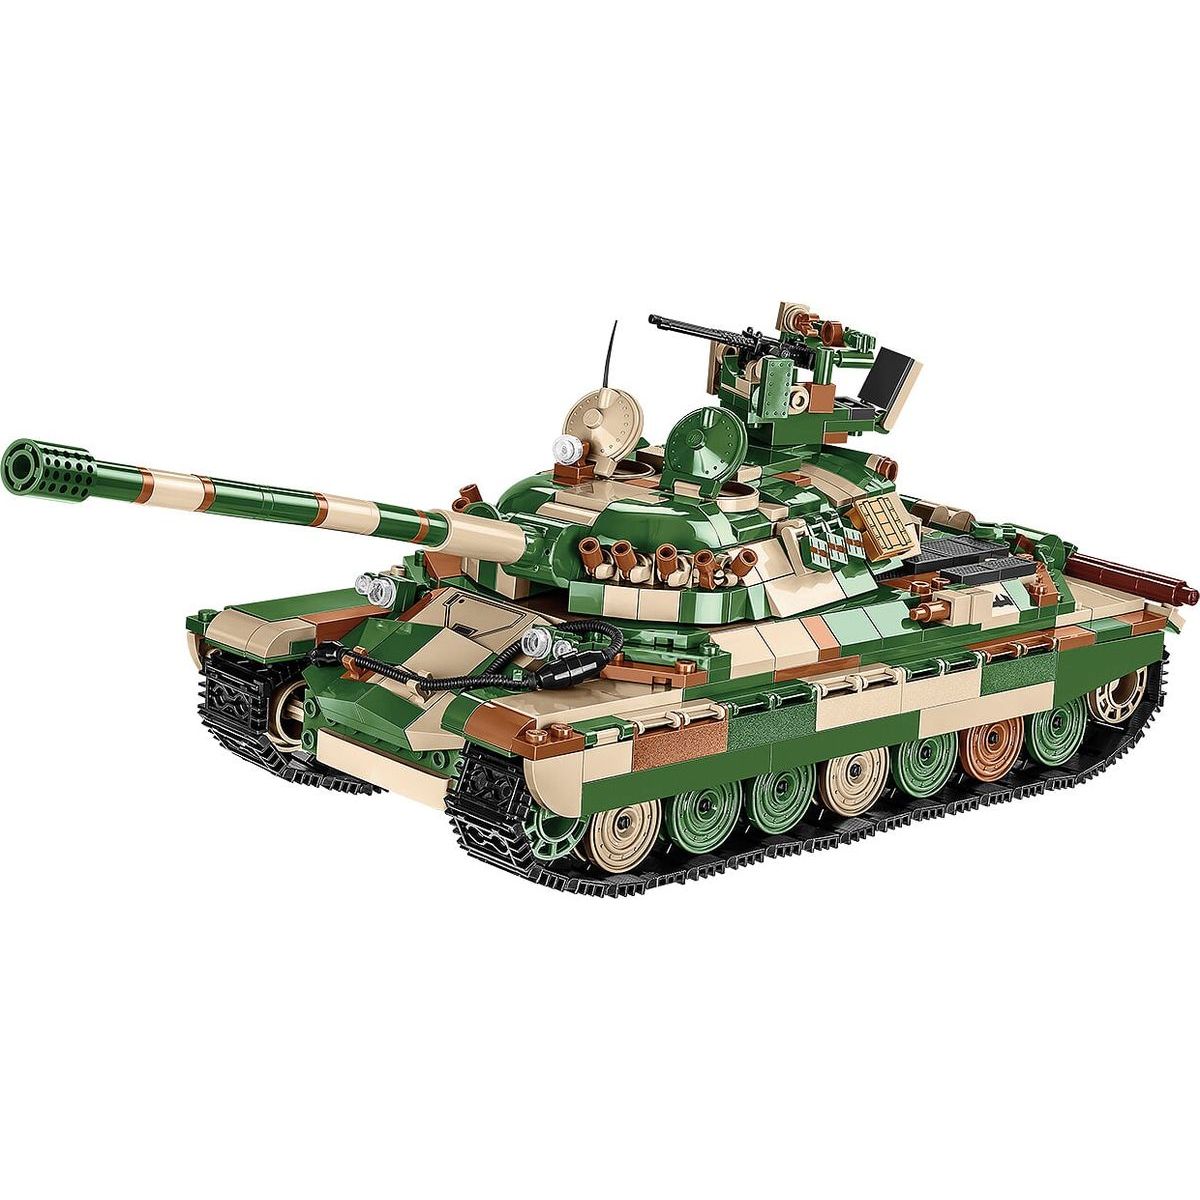 Cobi Malá armáda 3040 World of Tanks IS-7 Granite